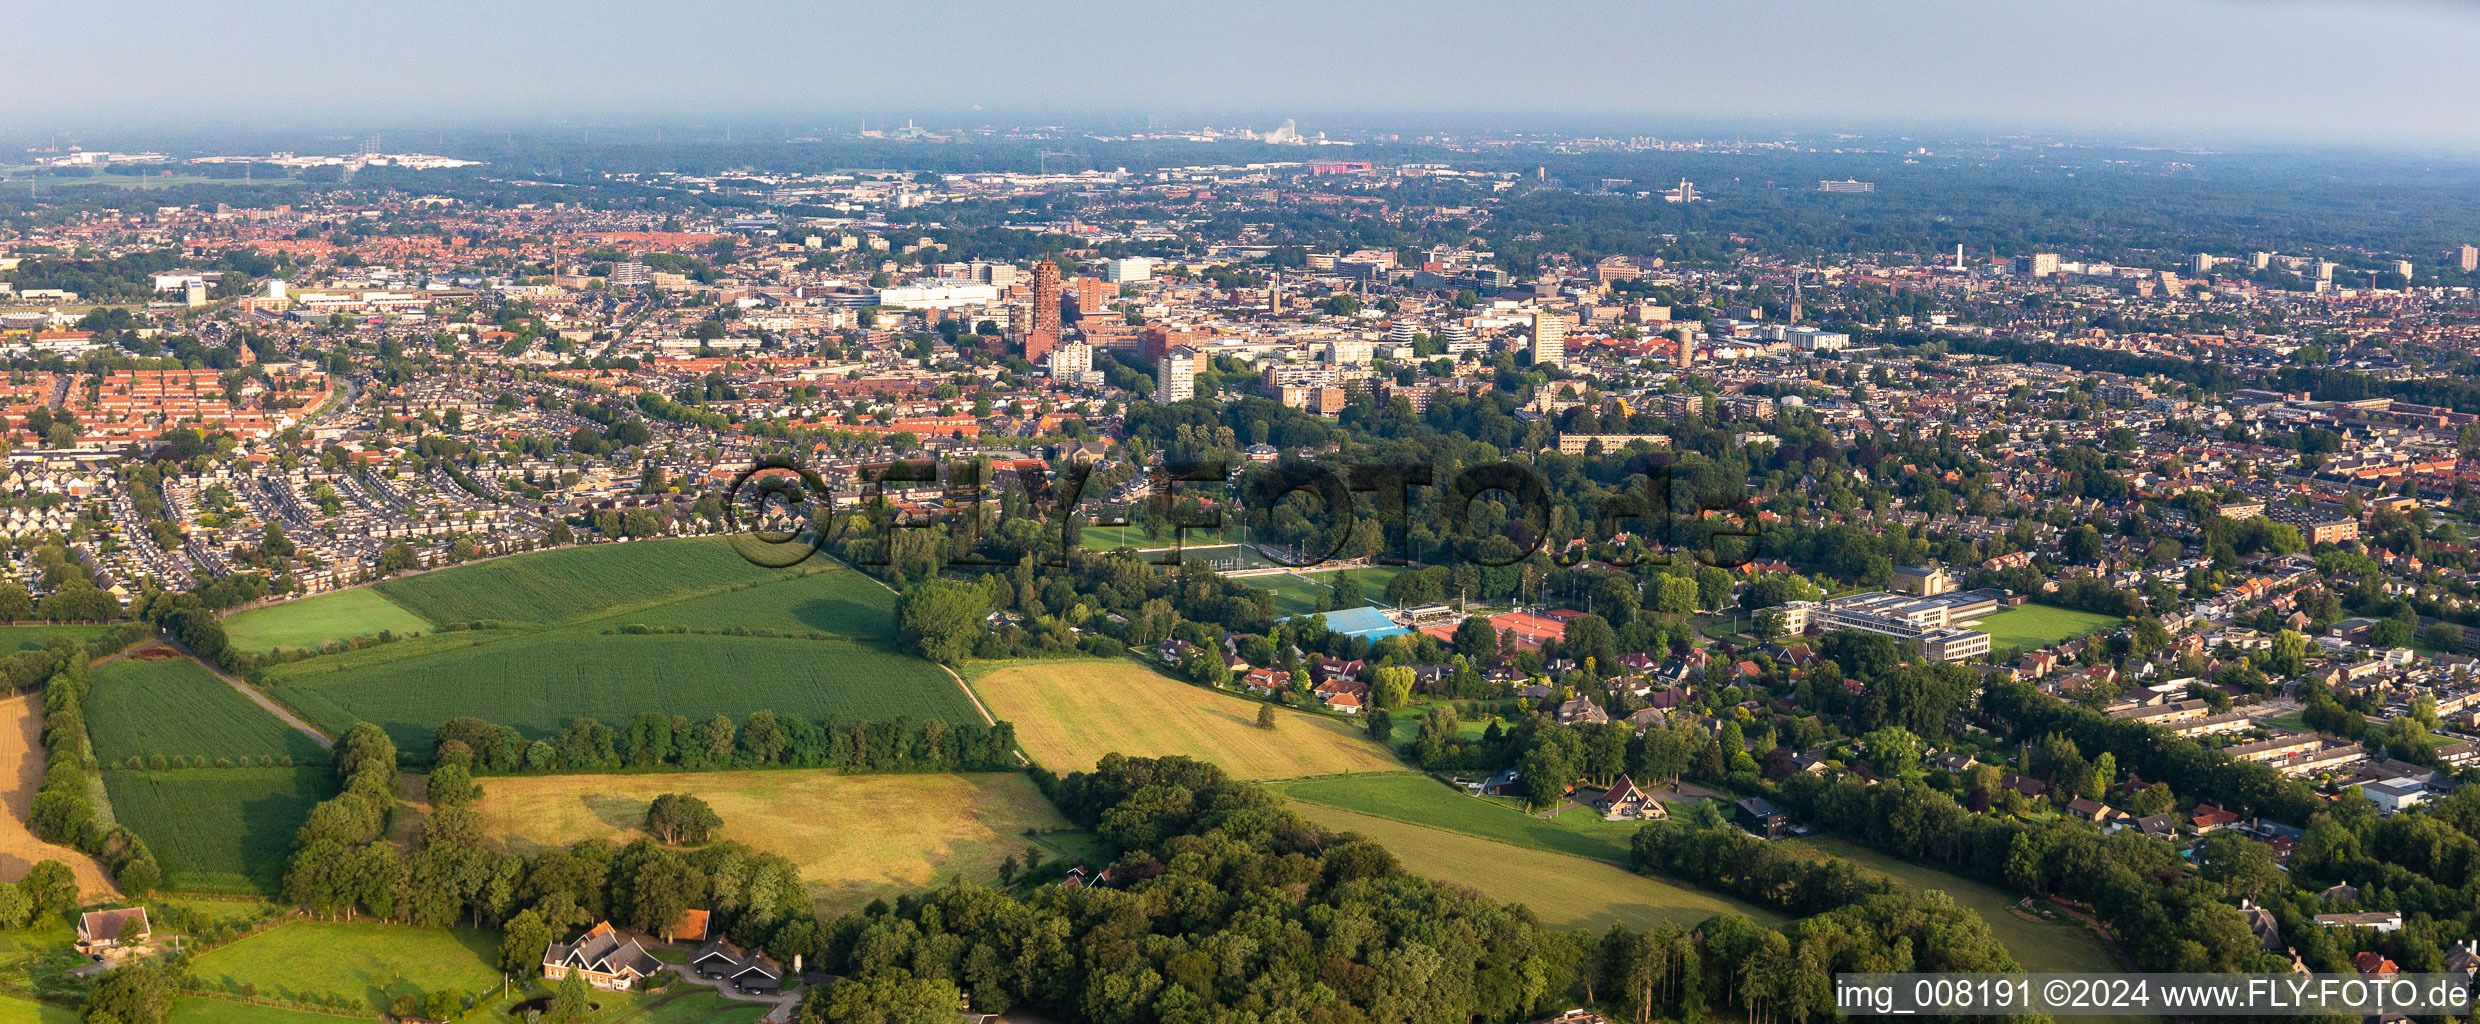 Stadtgebiet mit Außenbezirken und Innenstadtbereich in Enschede in Overijssel, Niederlande